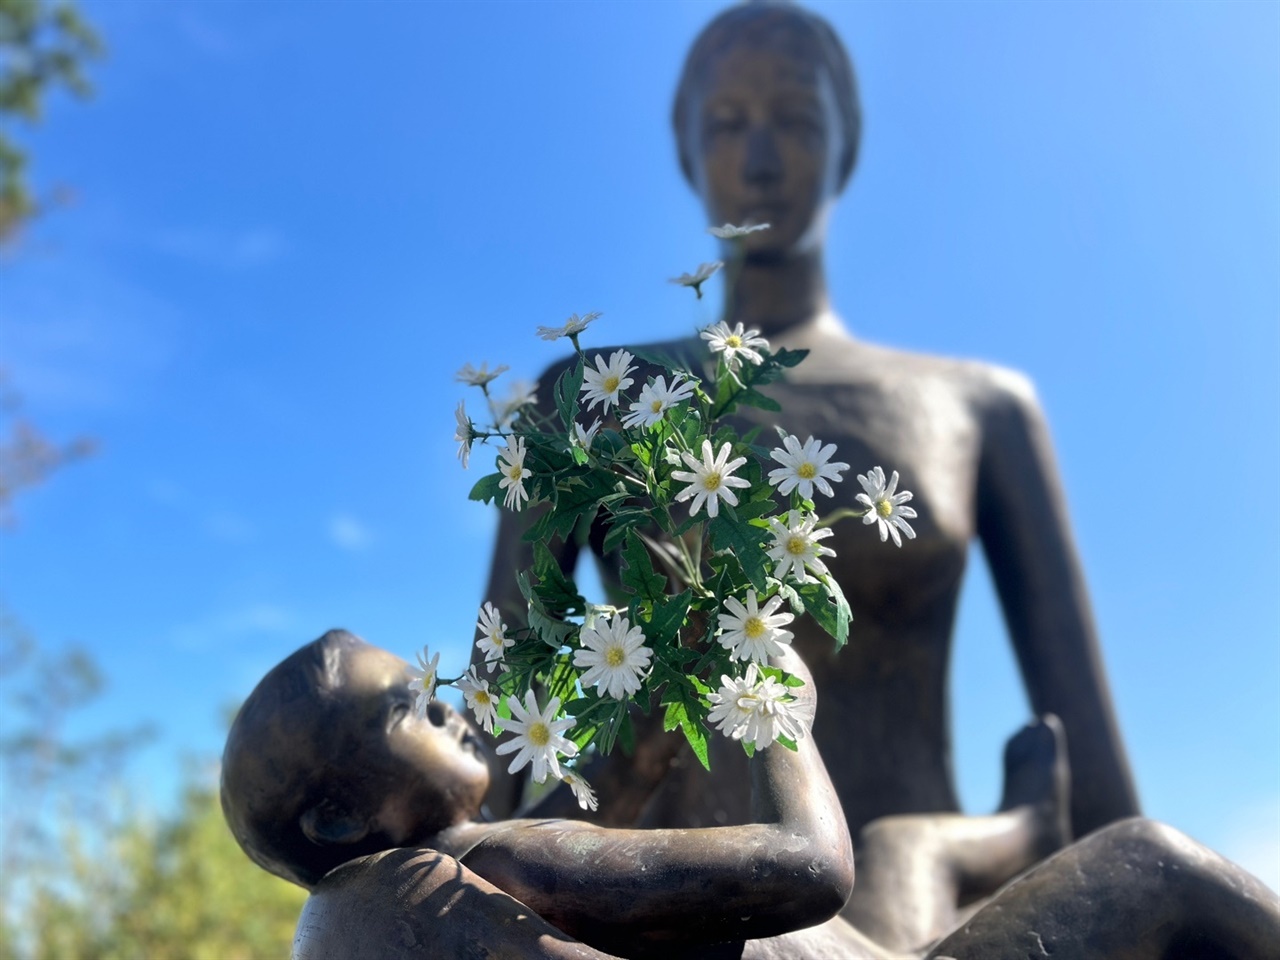 구절초는 ‘어머니의 사랑을 담은 꽃’이라는 꽃말을 가지고 있다. 그래서일까. 이곳 정상에는 어머니와 아들의 모자상이 조각되어 있다. 